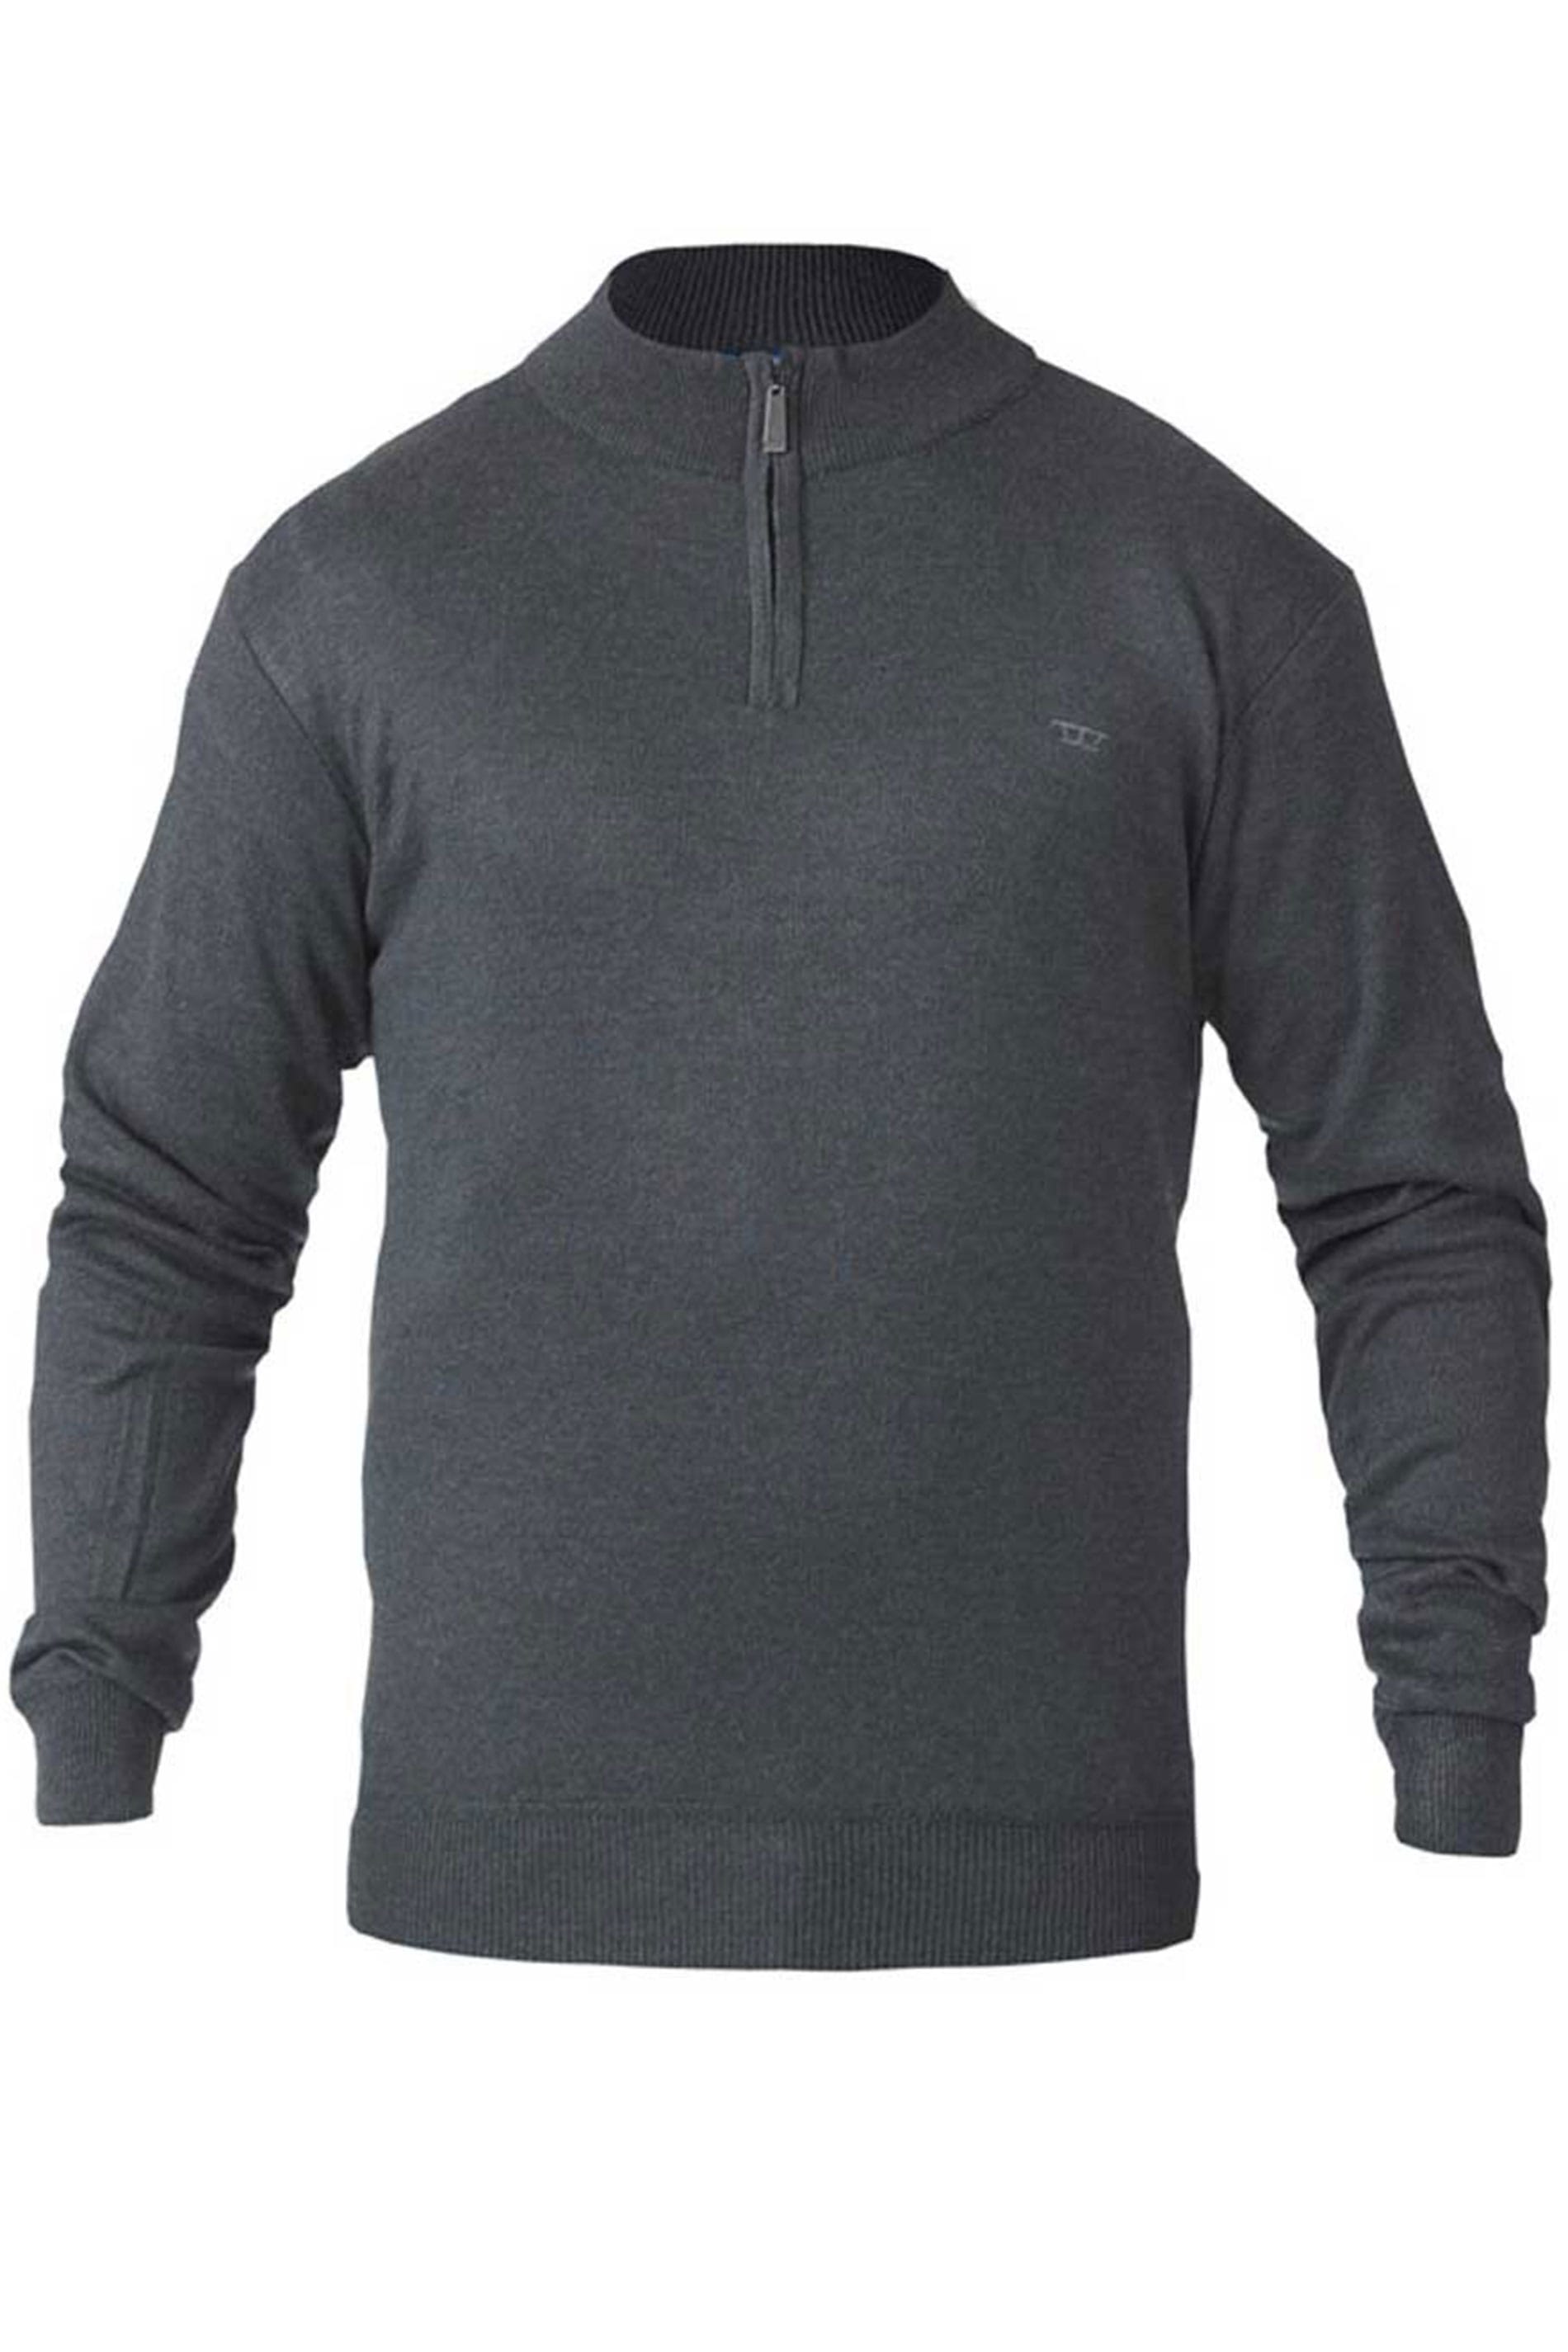 D555 Grey Quarter Zip Sweatshirt | BadRhino